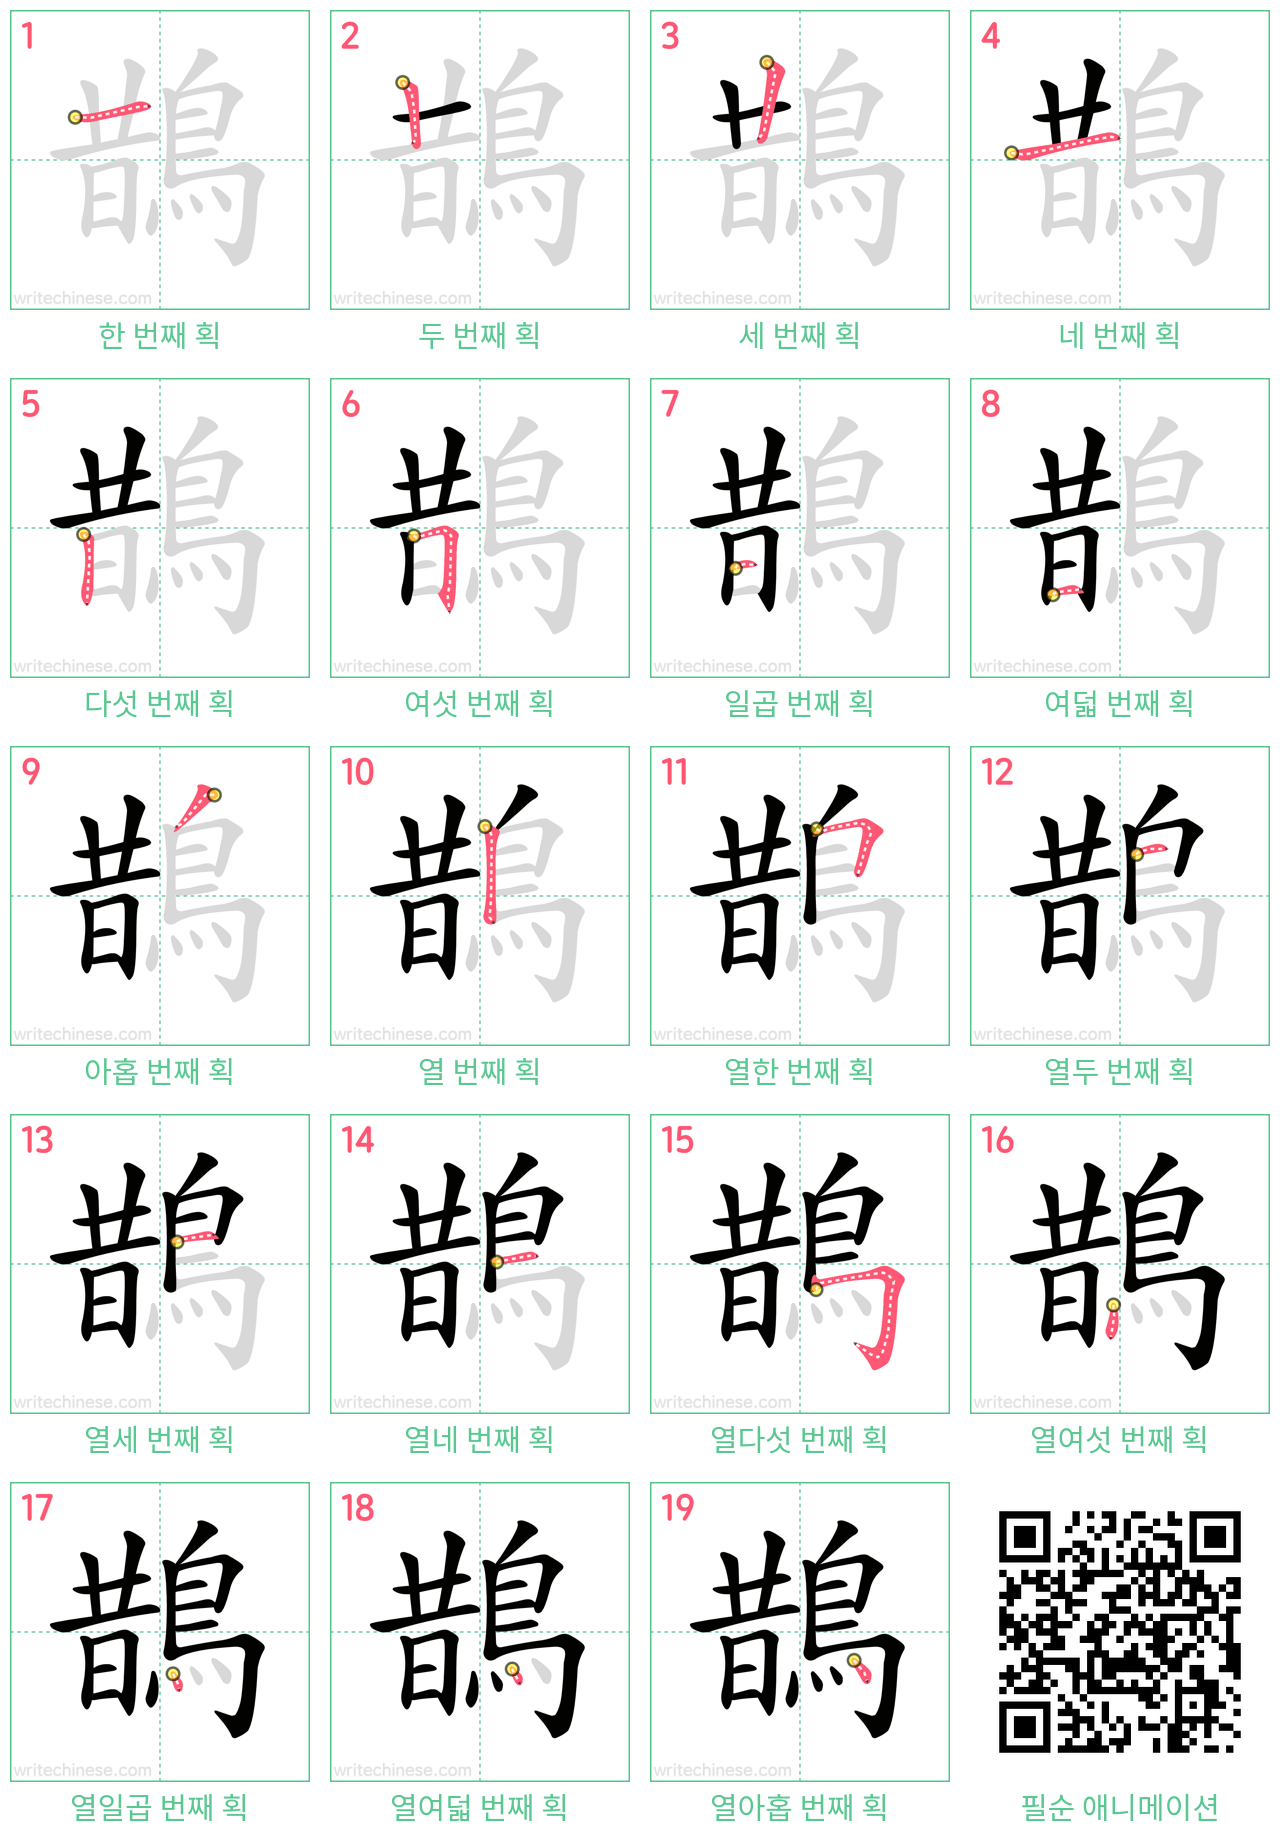 鵲 step-by-step stroke order diagrams